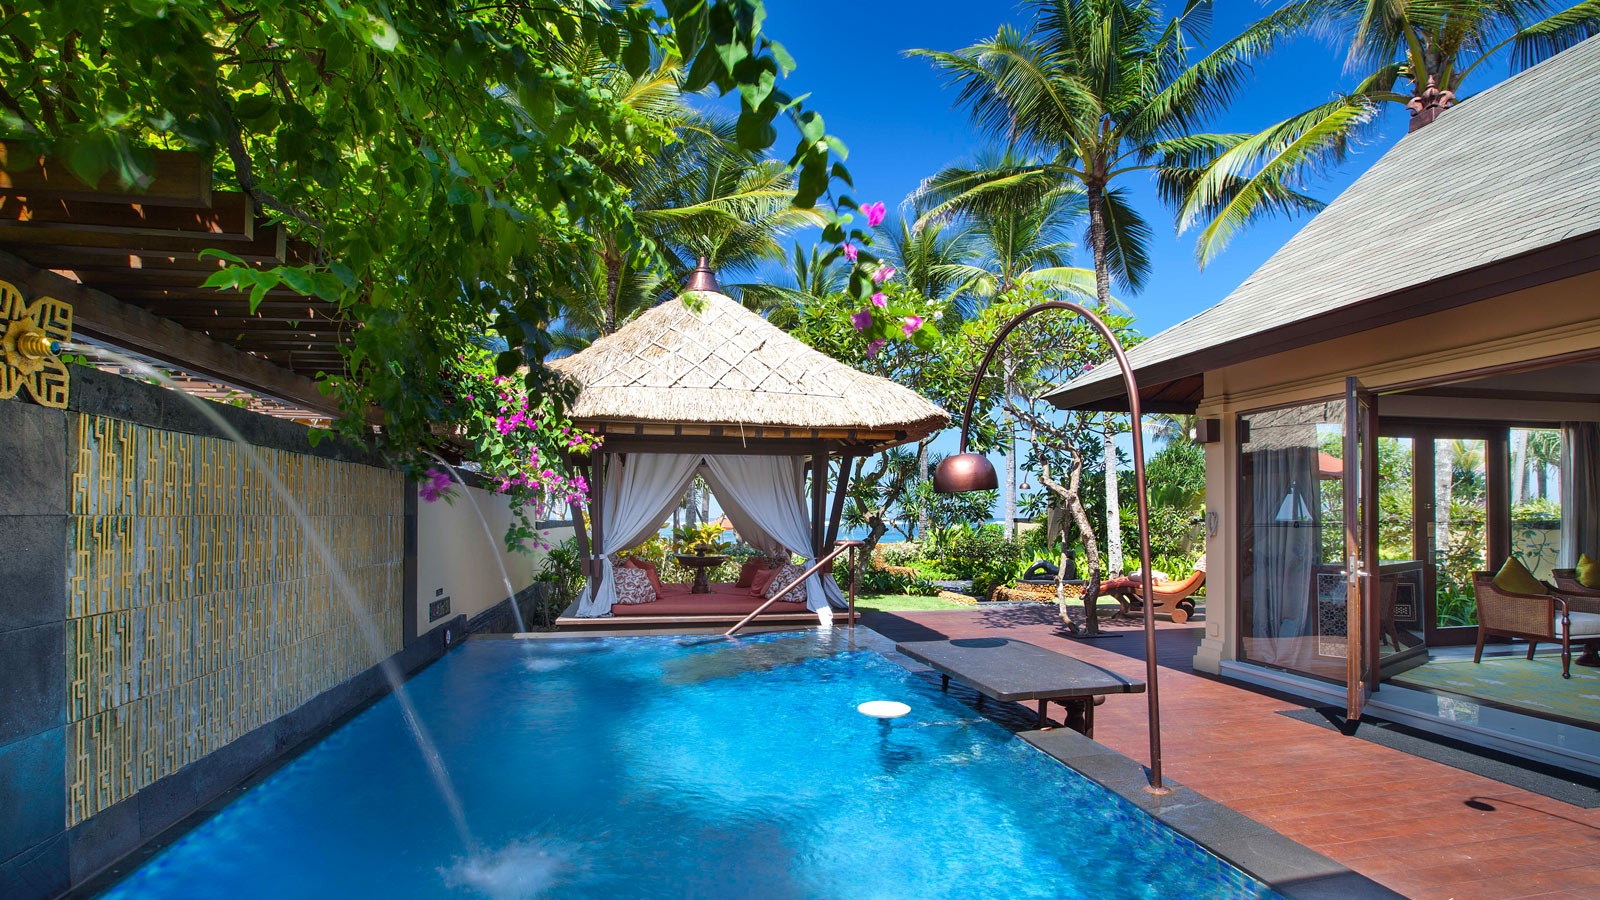 Koliko košta odmor na Baliju? Cijena putovanja - 2020